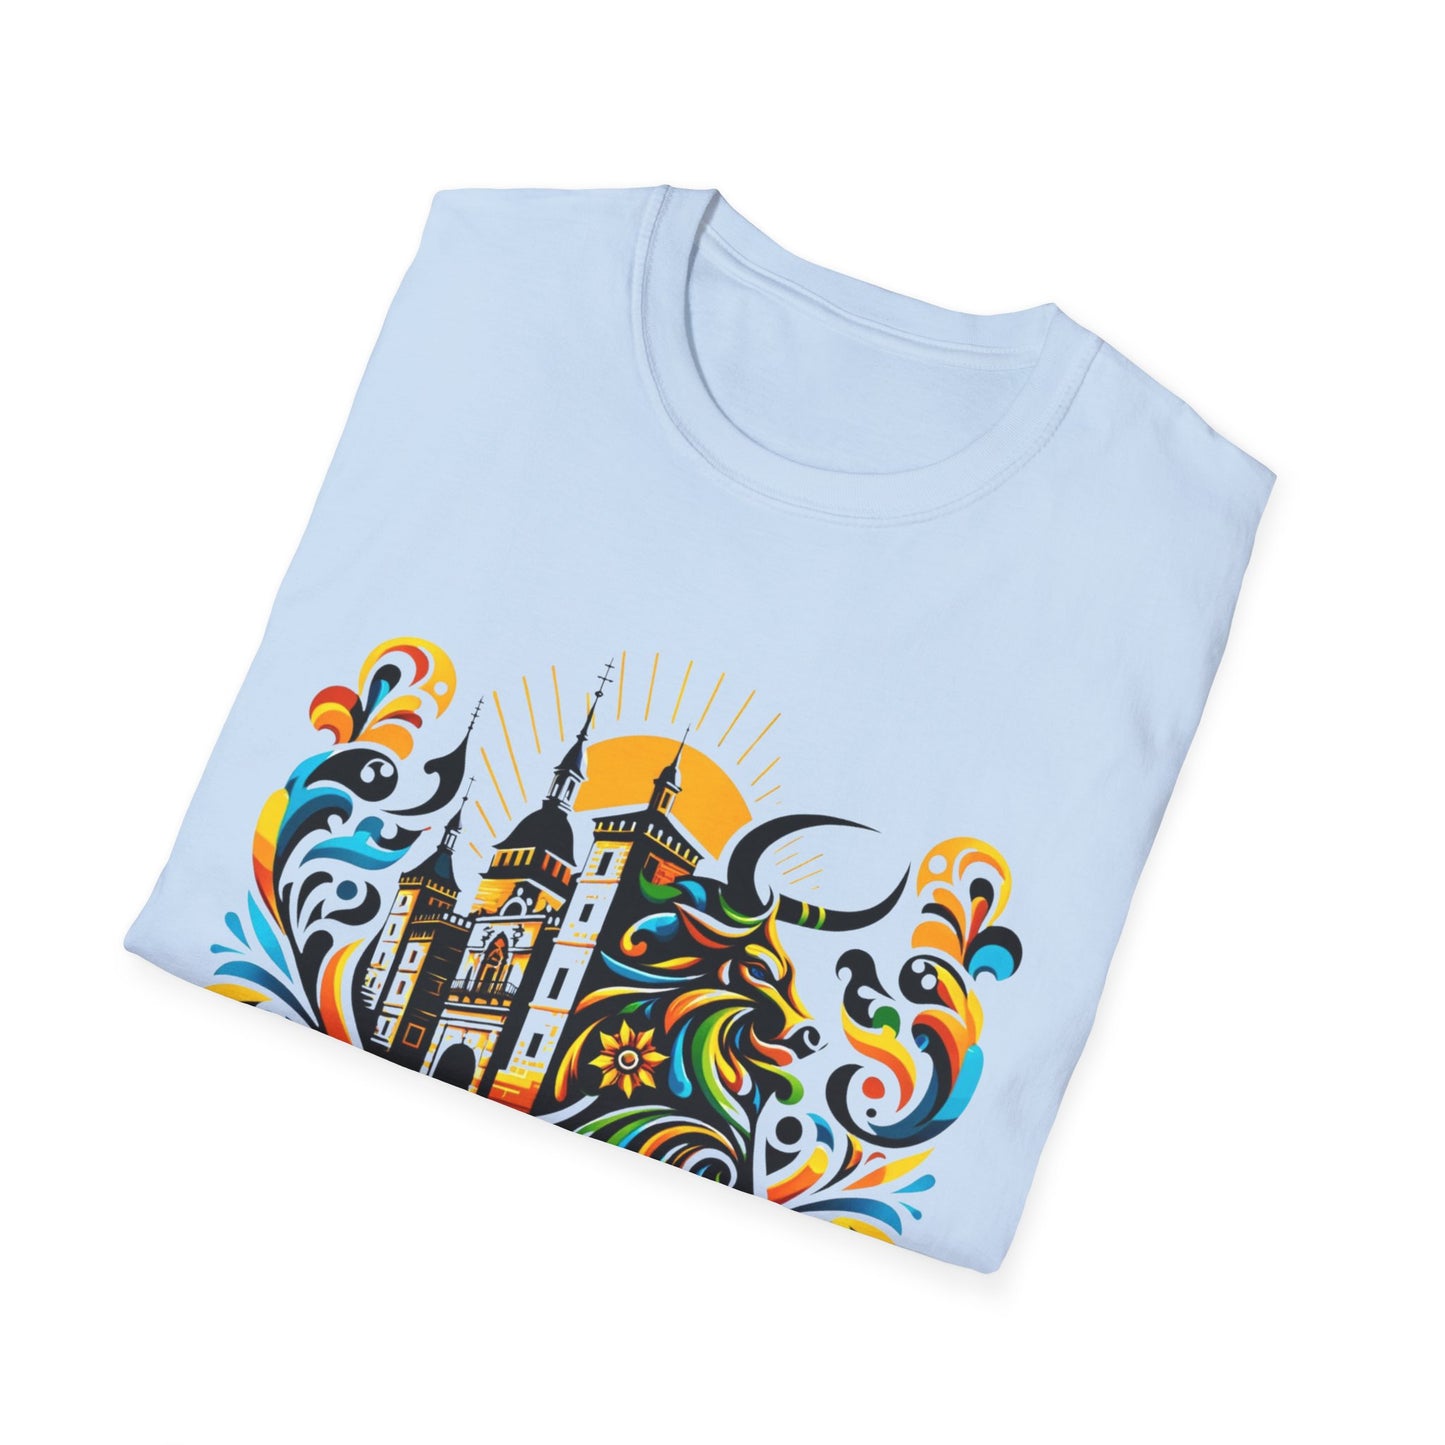 El arte se encuentra con el estilo: diseño de camiseta inspirado en Alcañiz